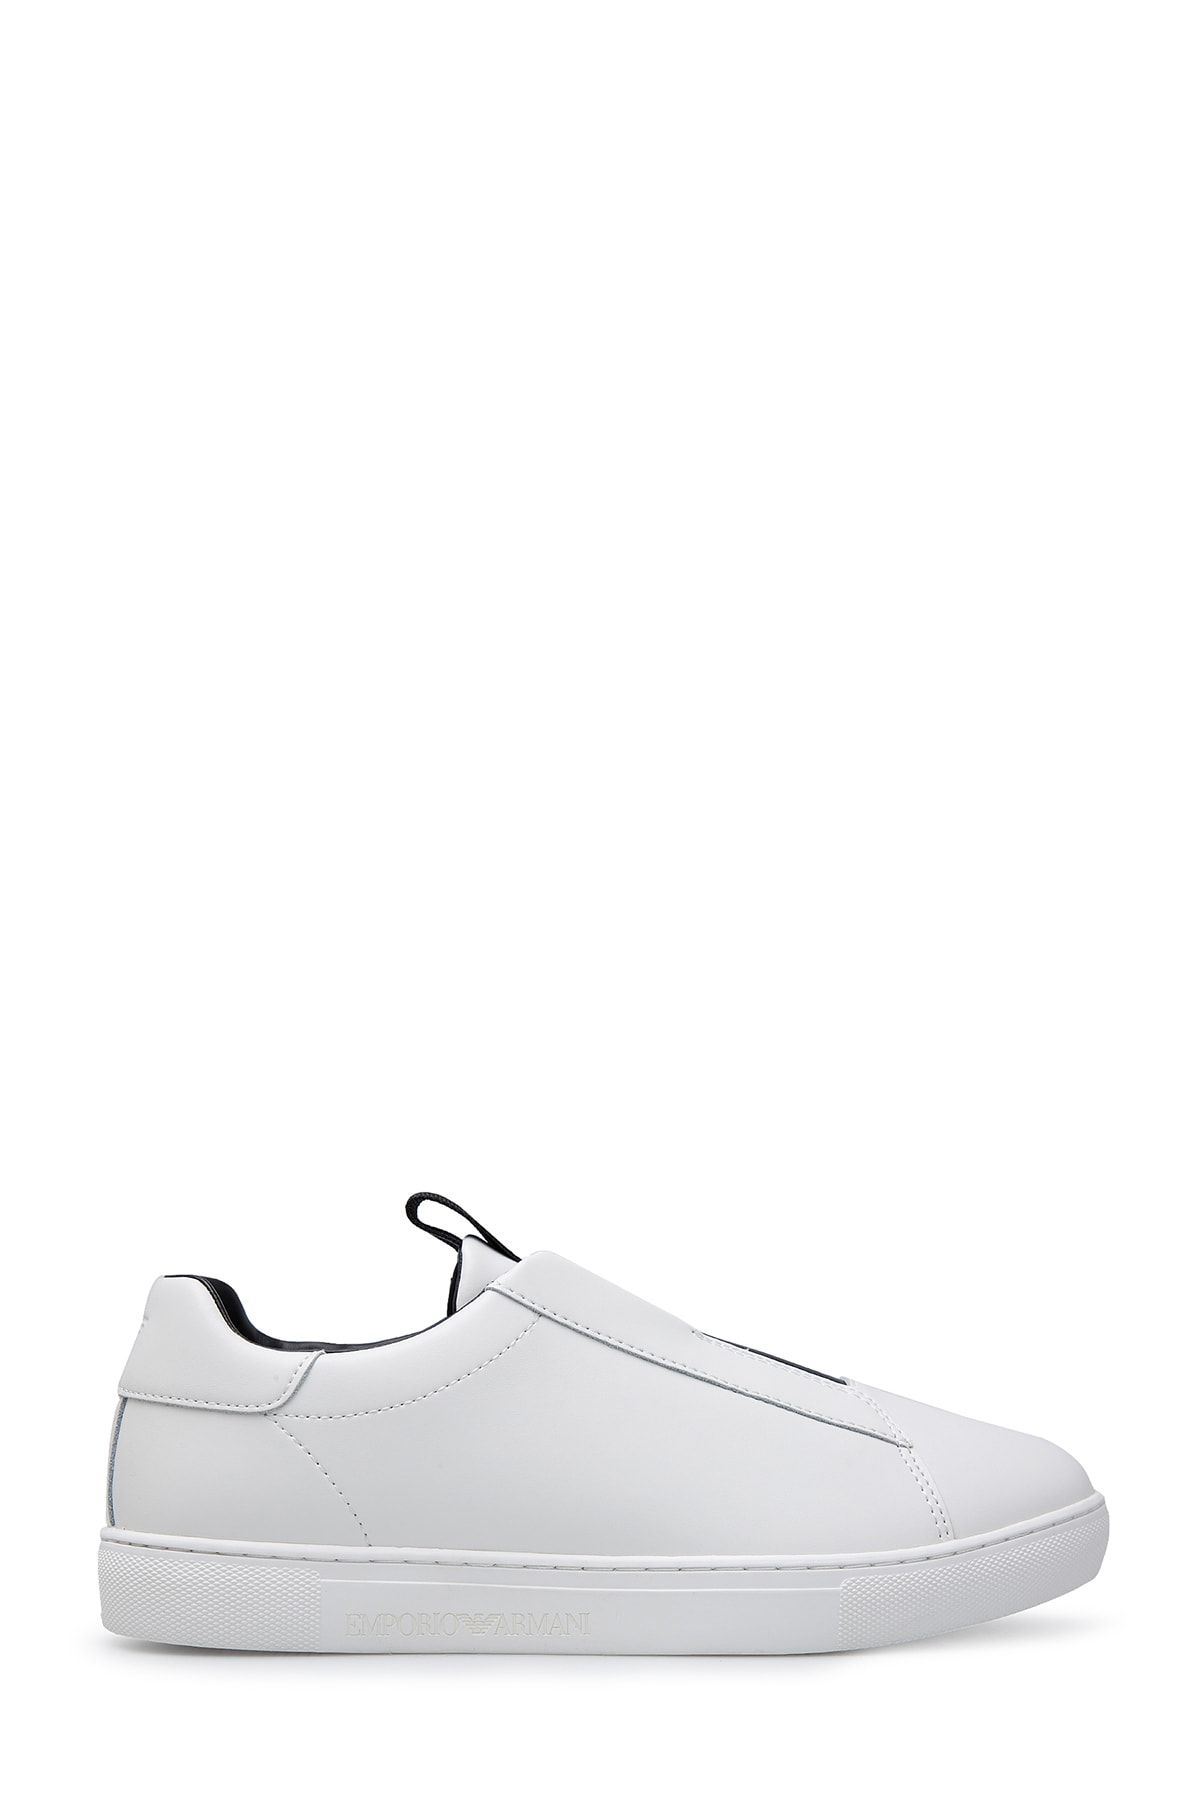 Emporio Armani Ayakkabı Erkek Ayakkabı X4X280 Xm045 A791